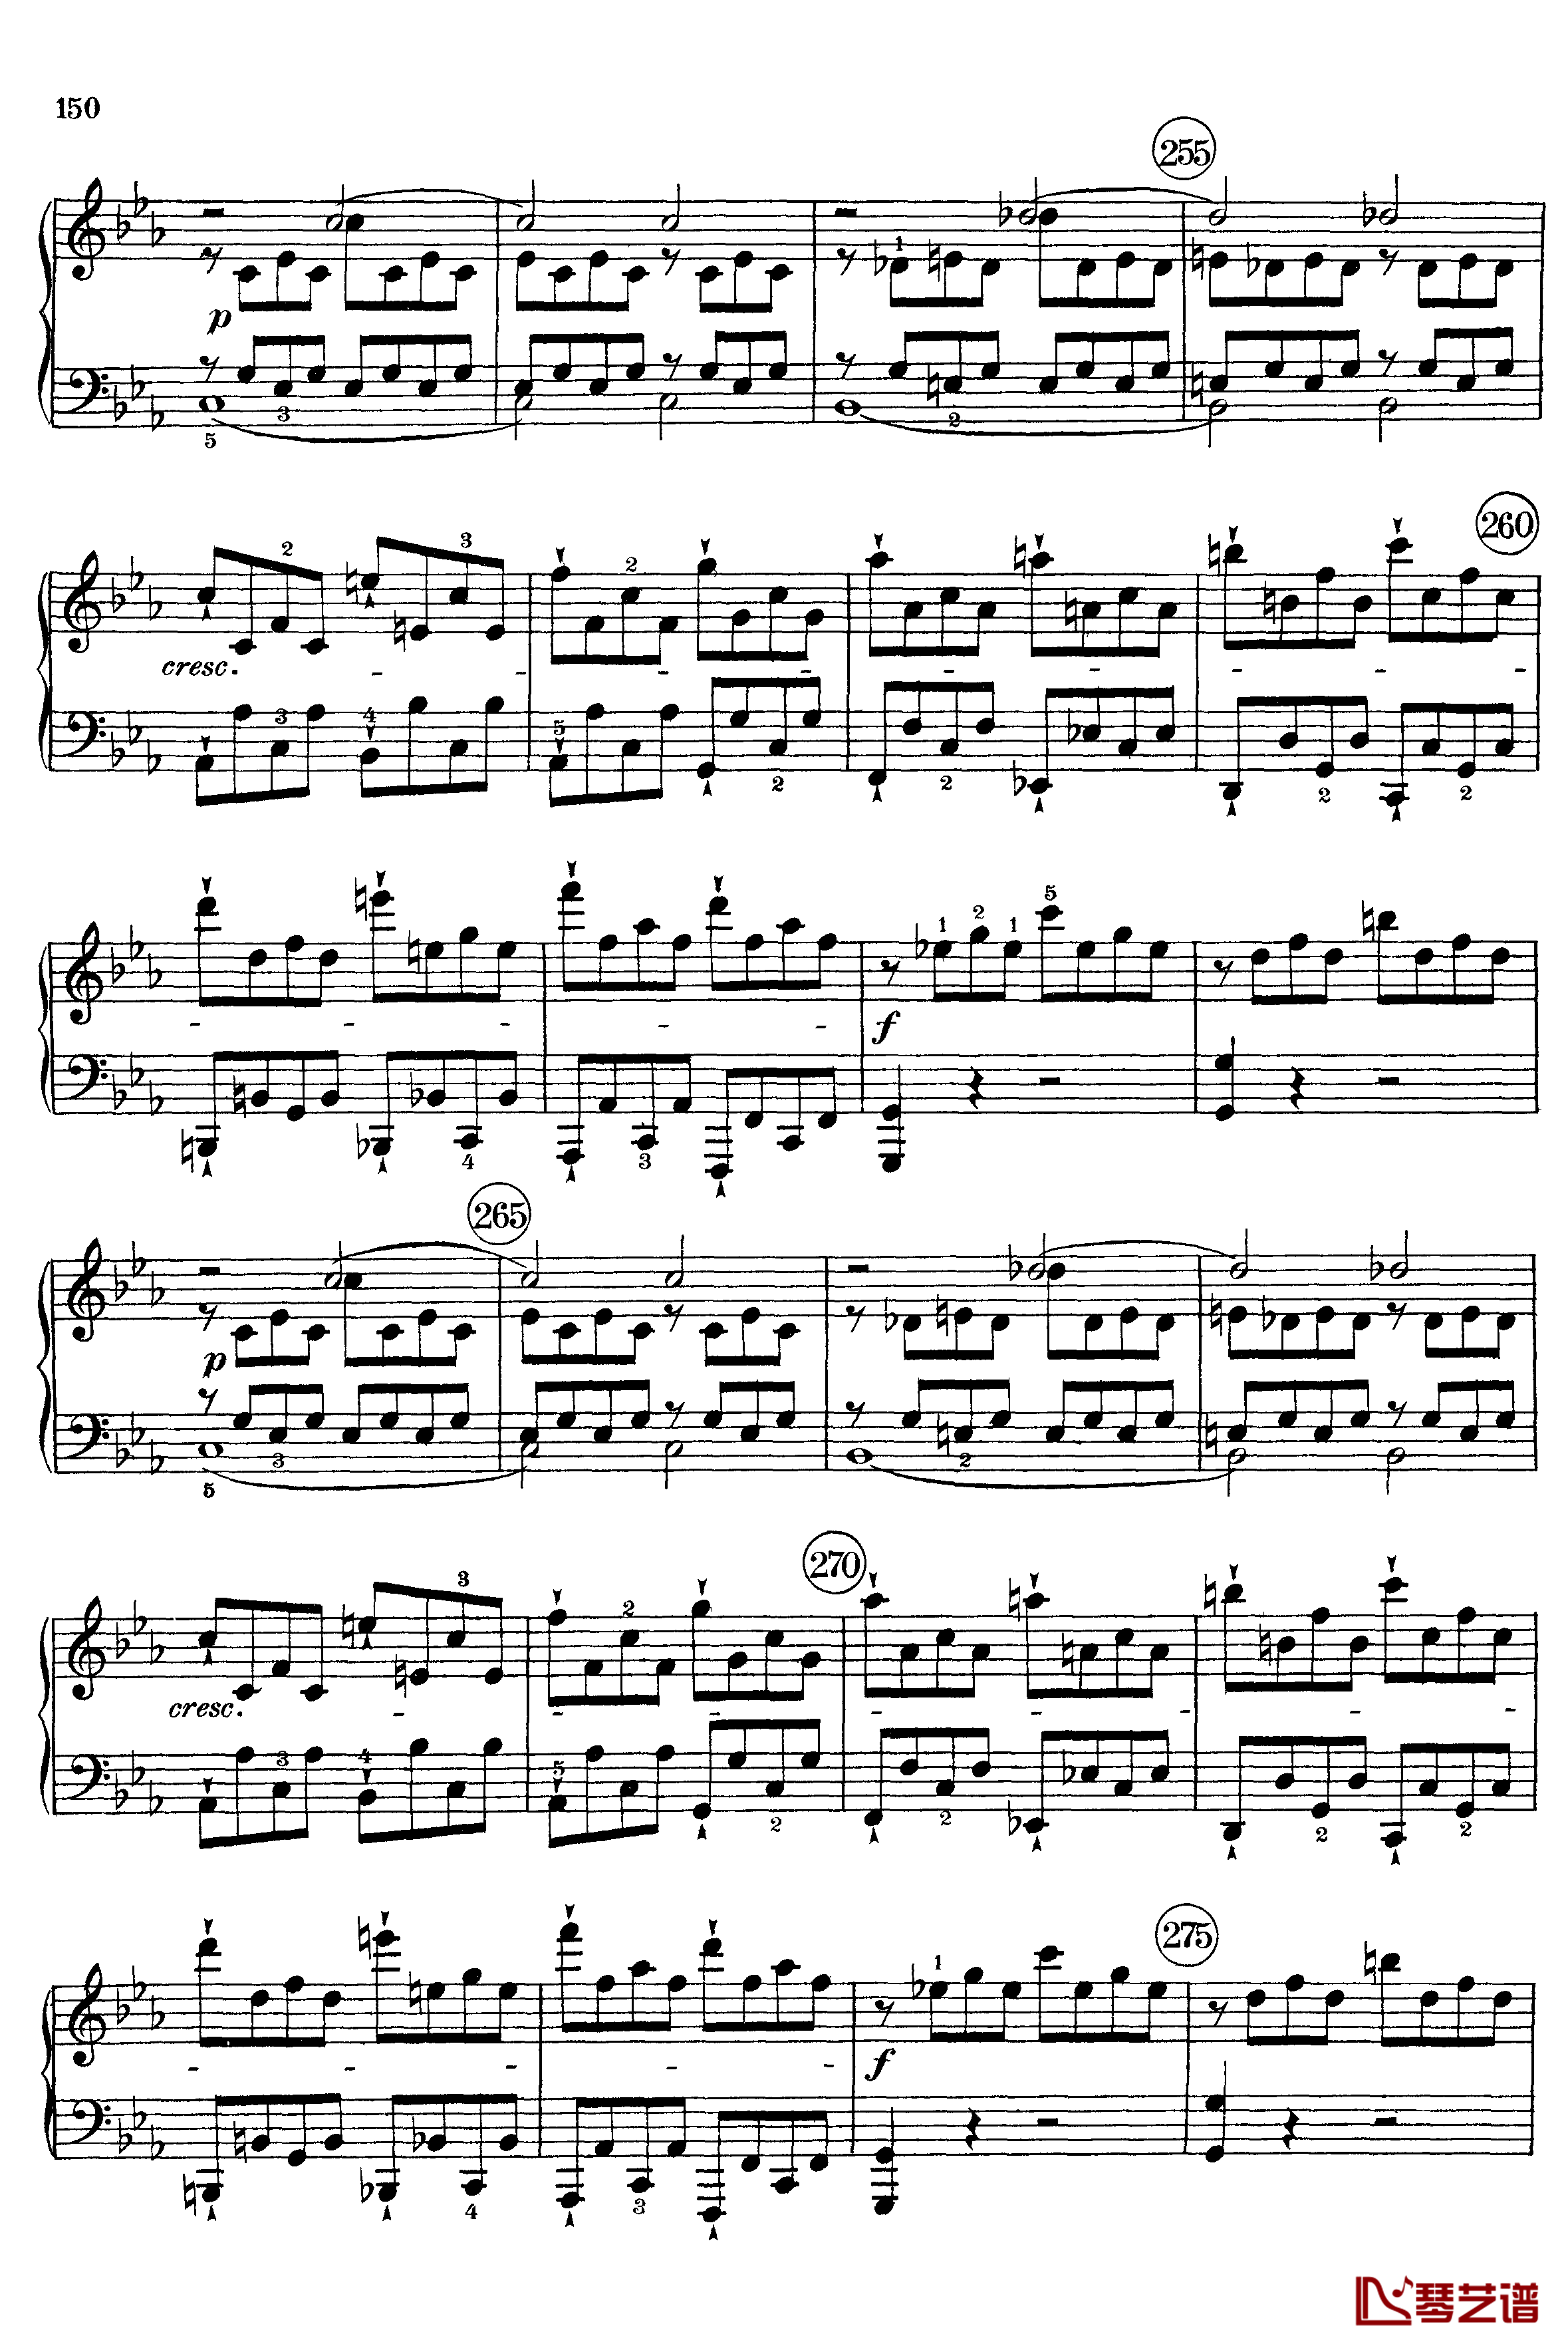 悲怆钢琴谱-c小调第八号钢琴奏鸣曲-全乐章-带指法版-贝多芬-beethoven8